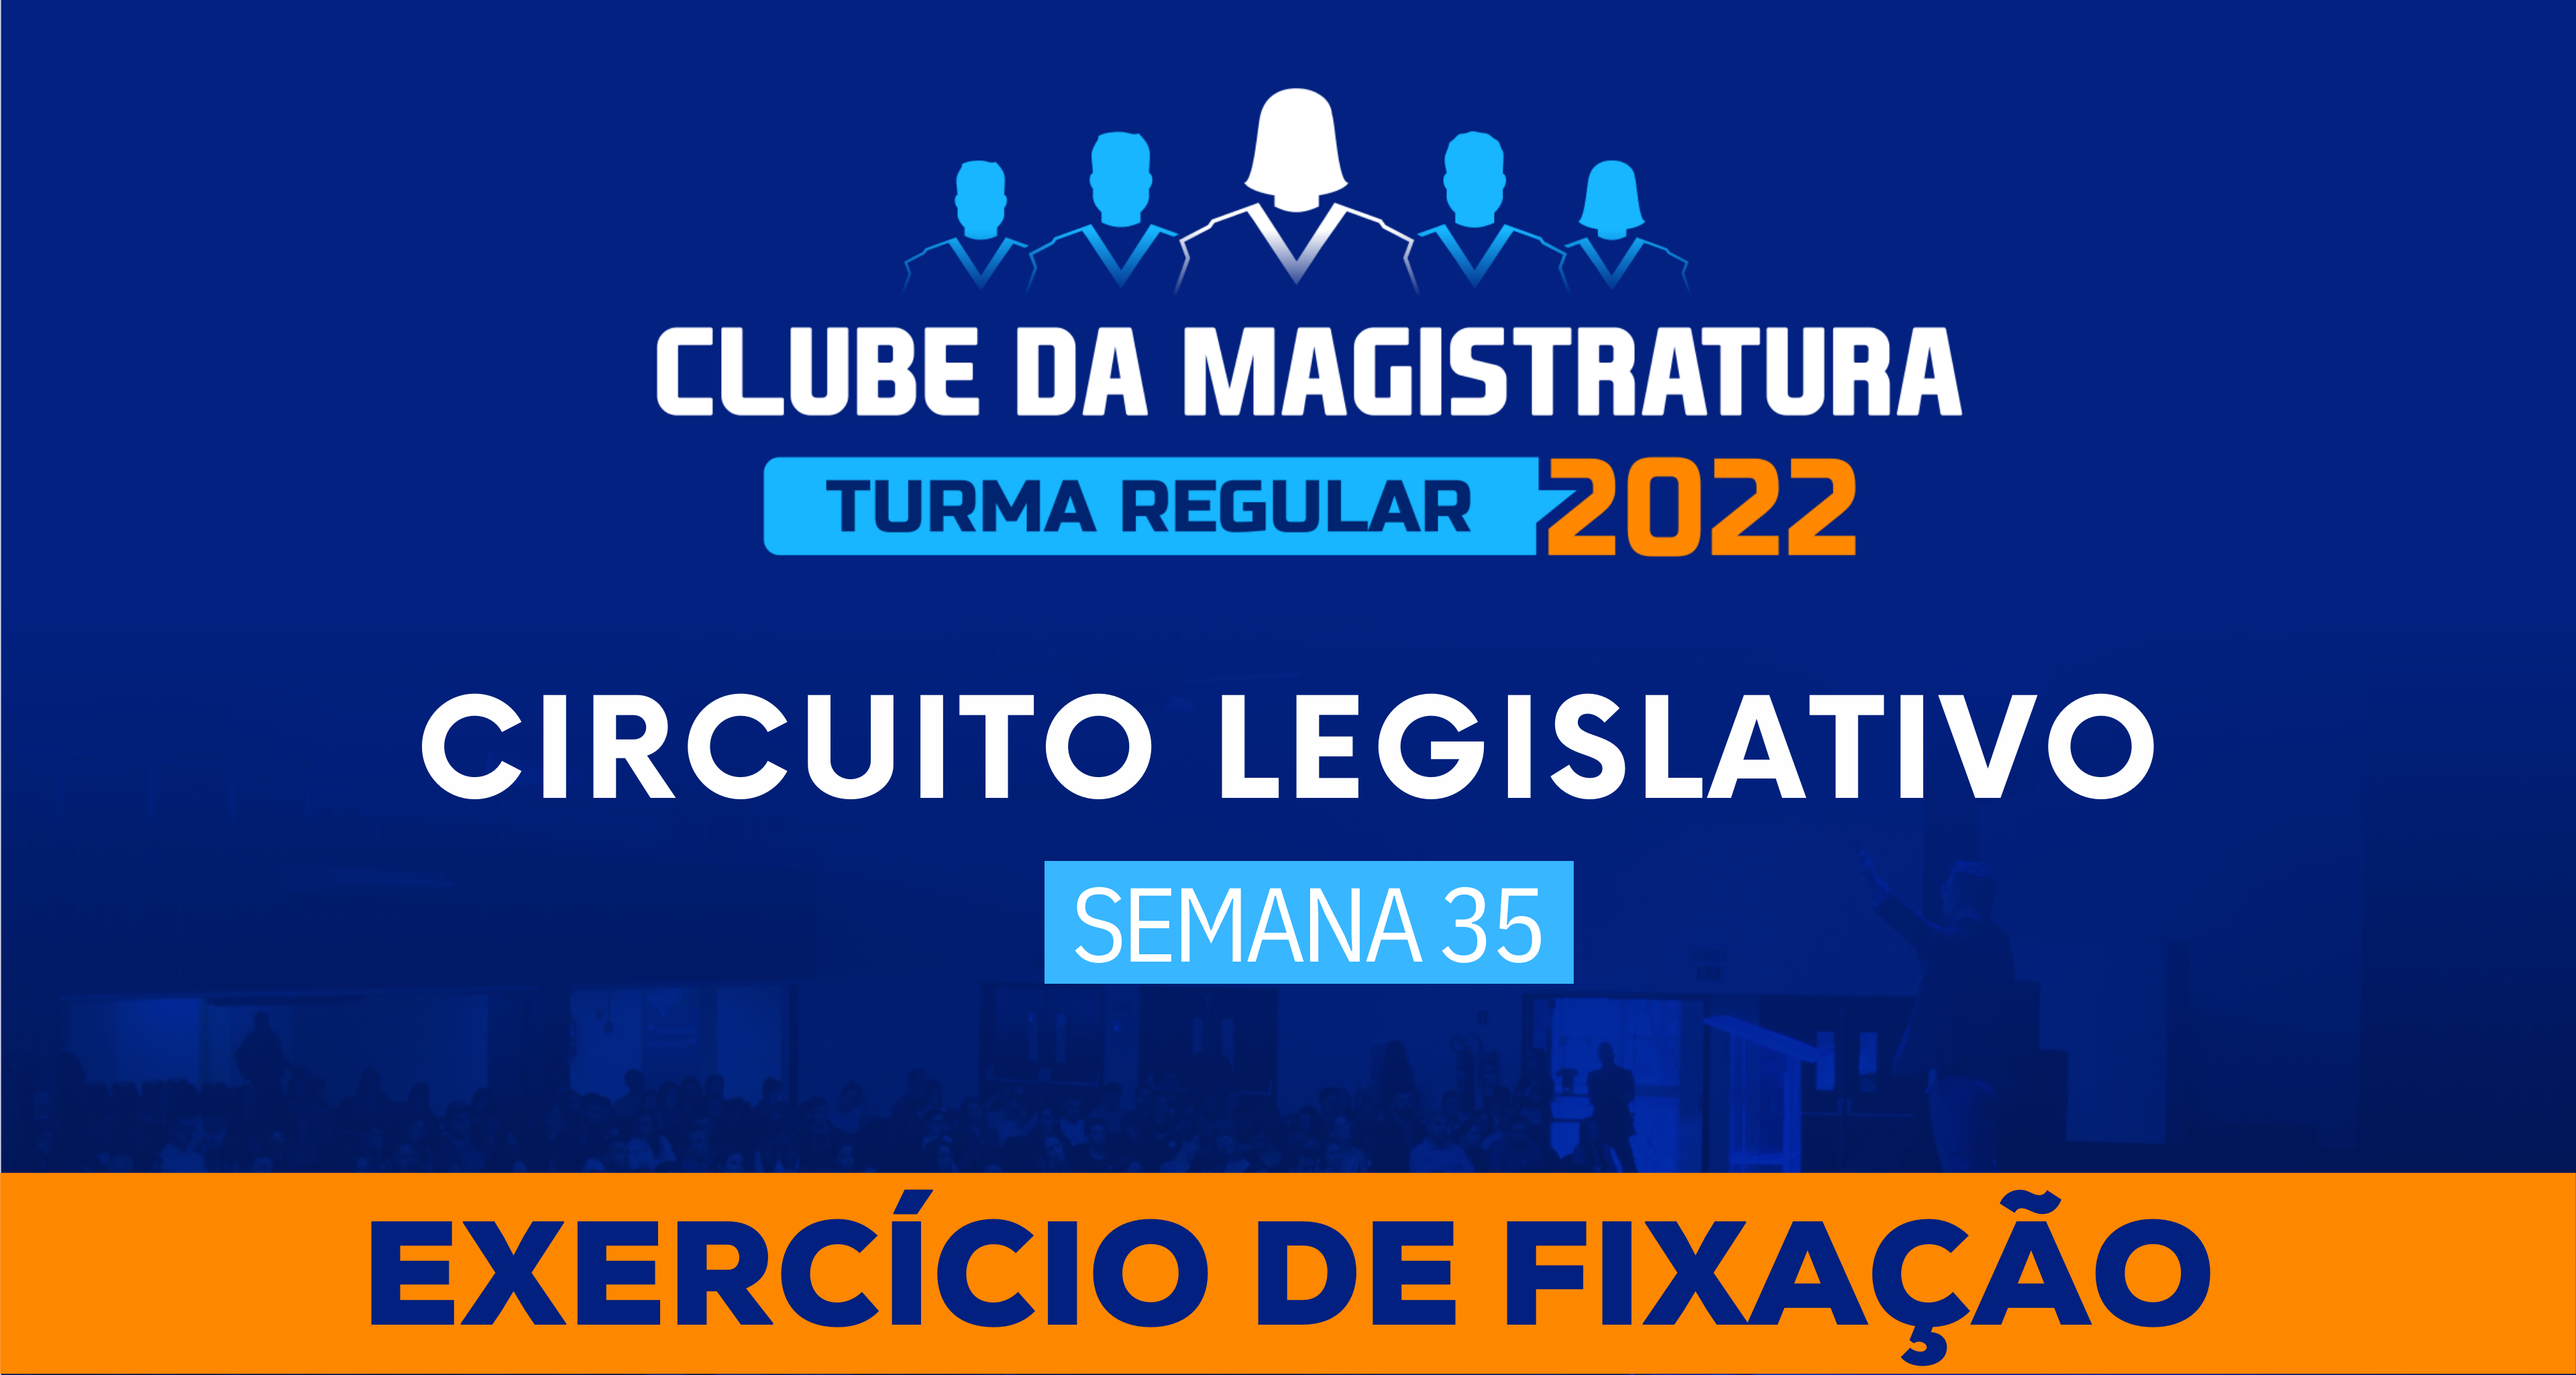 Circuito Legislativo 2022.1 (Clube da Magistratura - Semana 35)